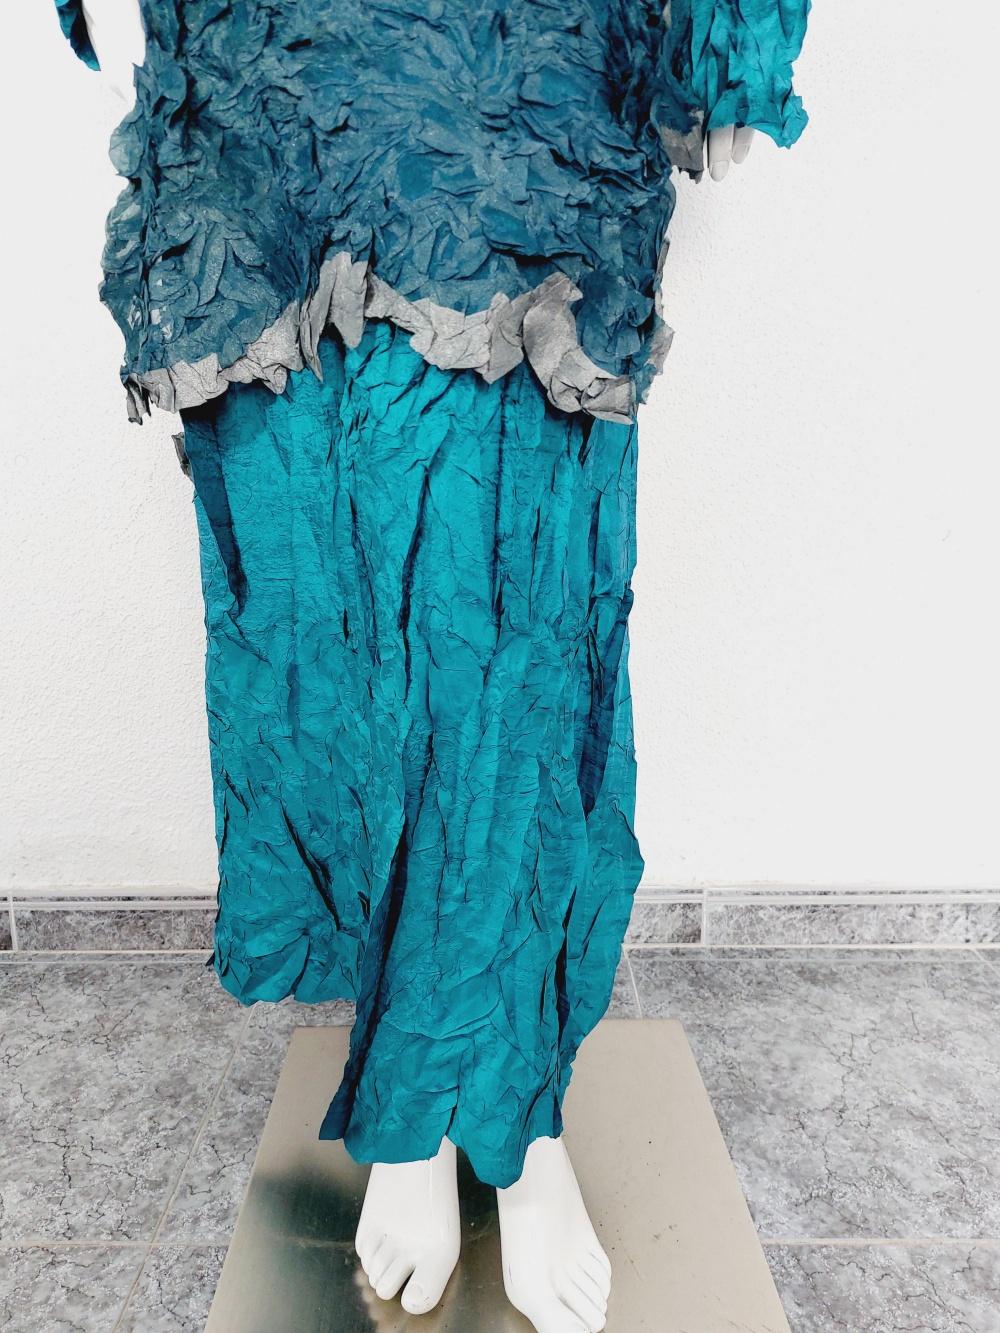 Issey Miyake Metallic Blue Wrinkled Runway Japanese Pleats Please Dress Gown 2